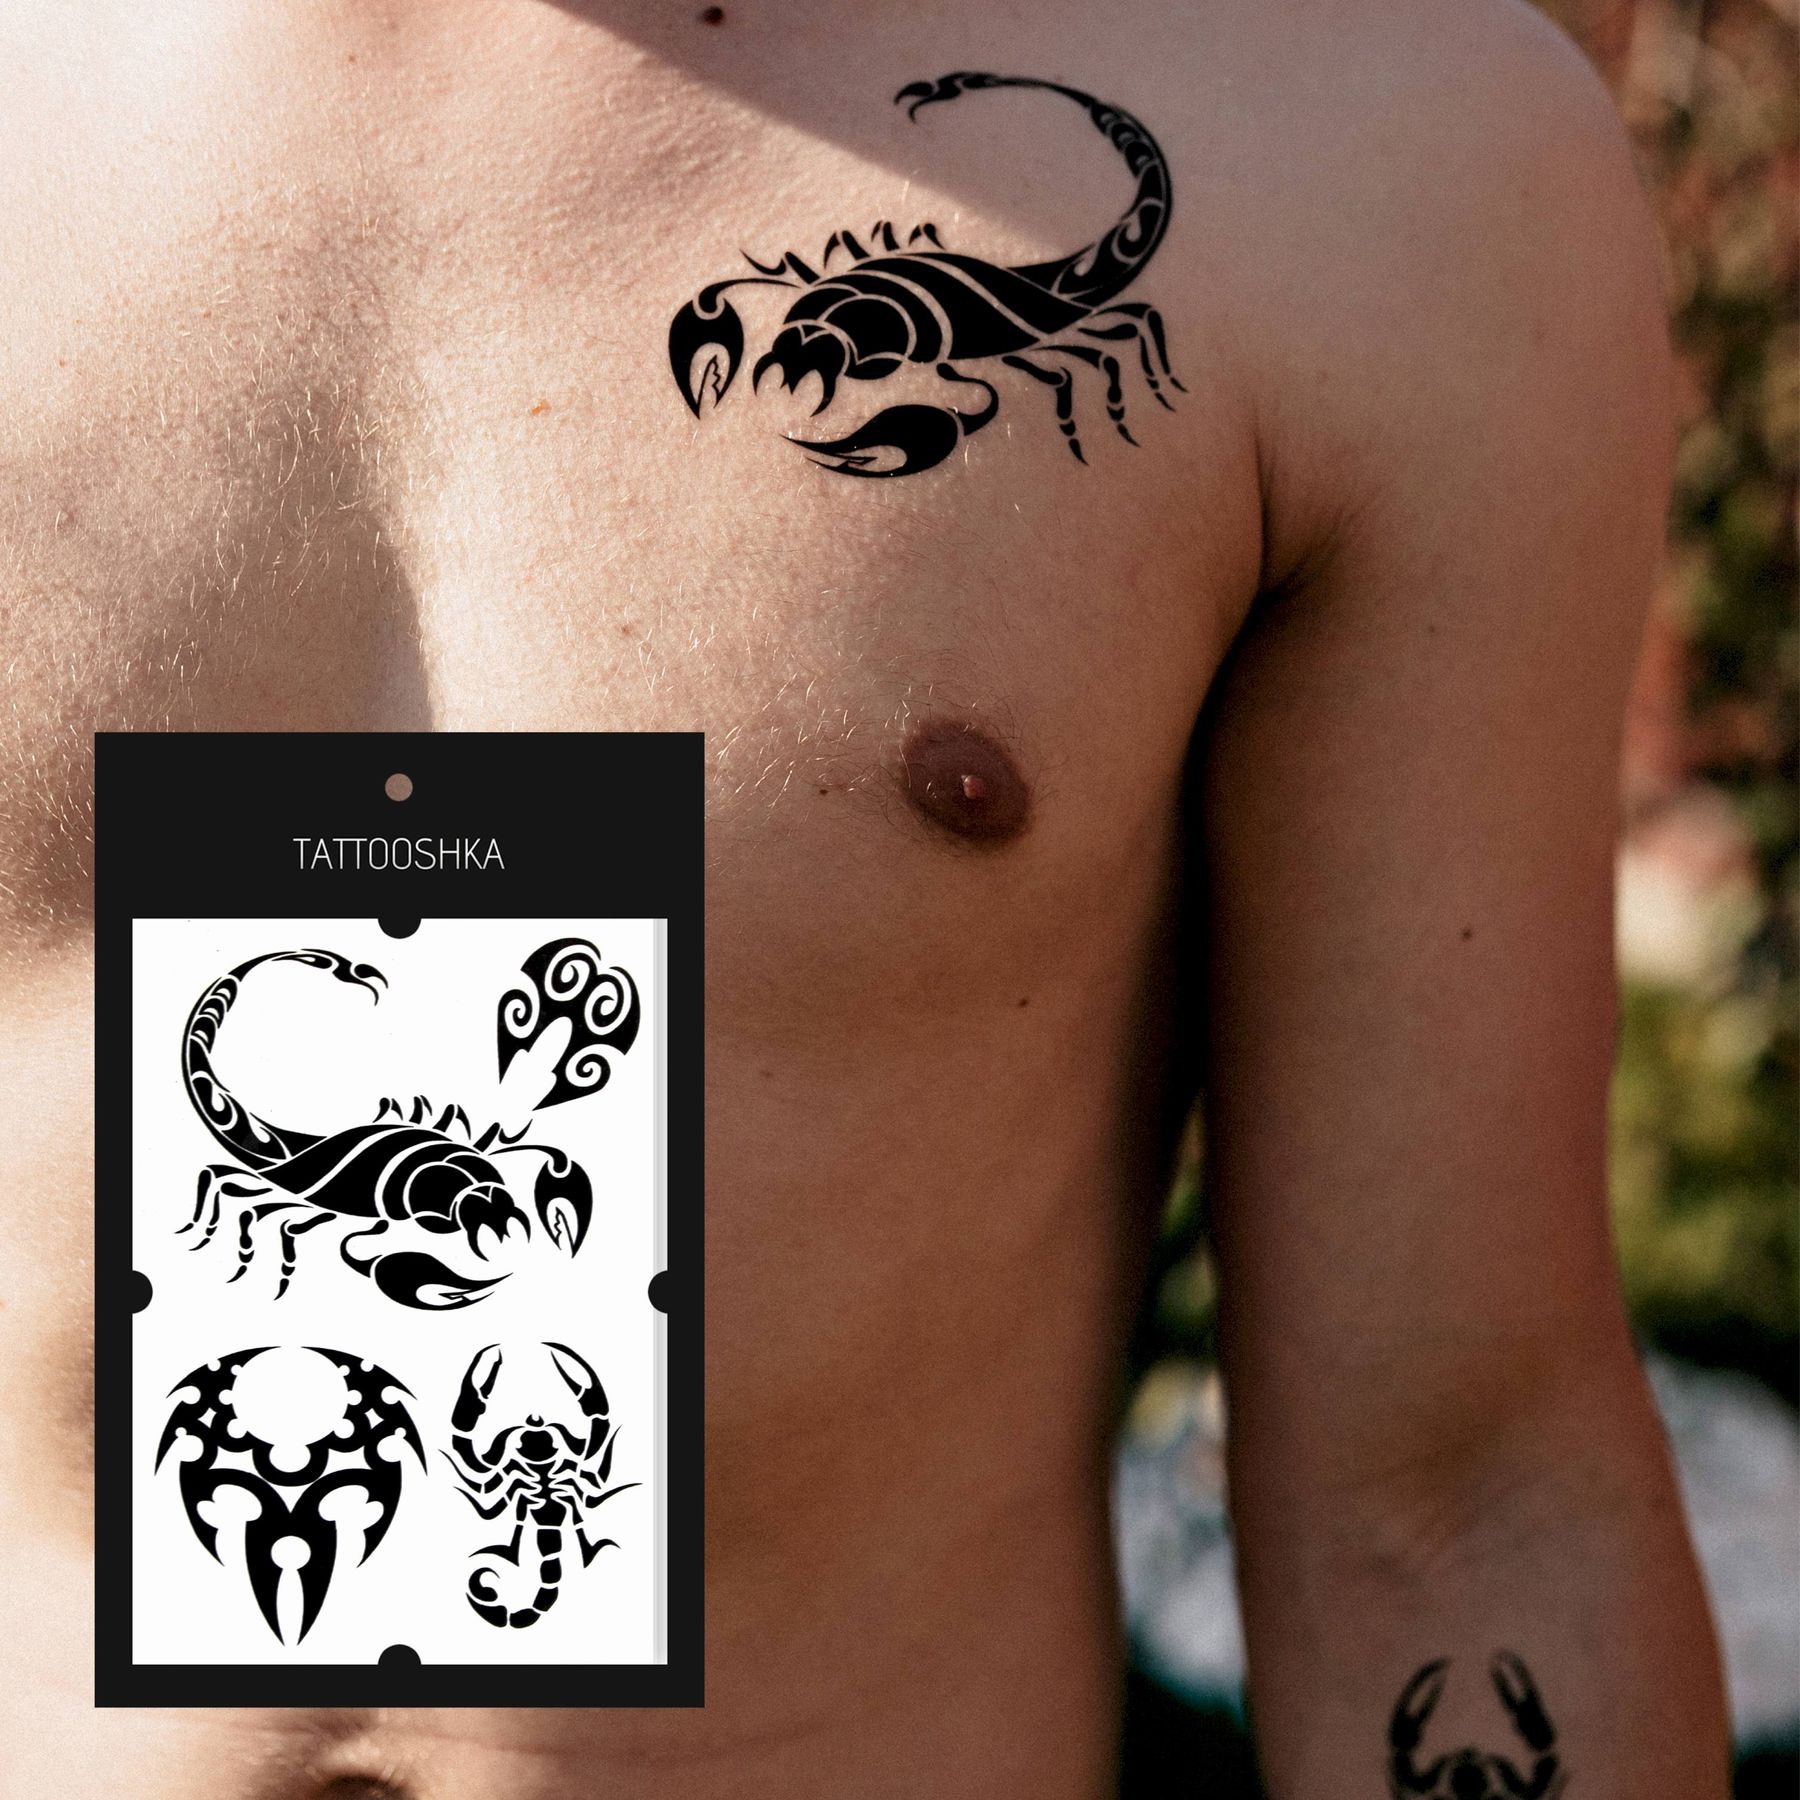 Тату знак зодиака Скорпион ♏ — значение, фото, эскизы и примеры для девушек и мужчин